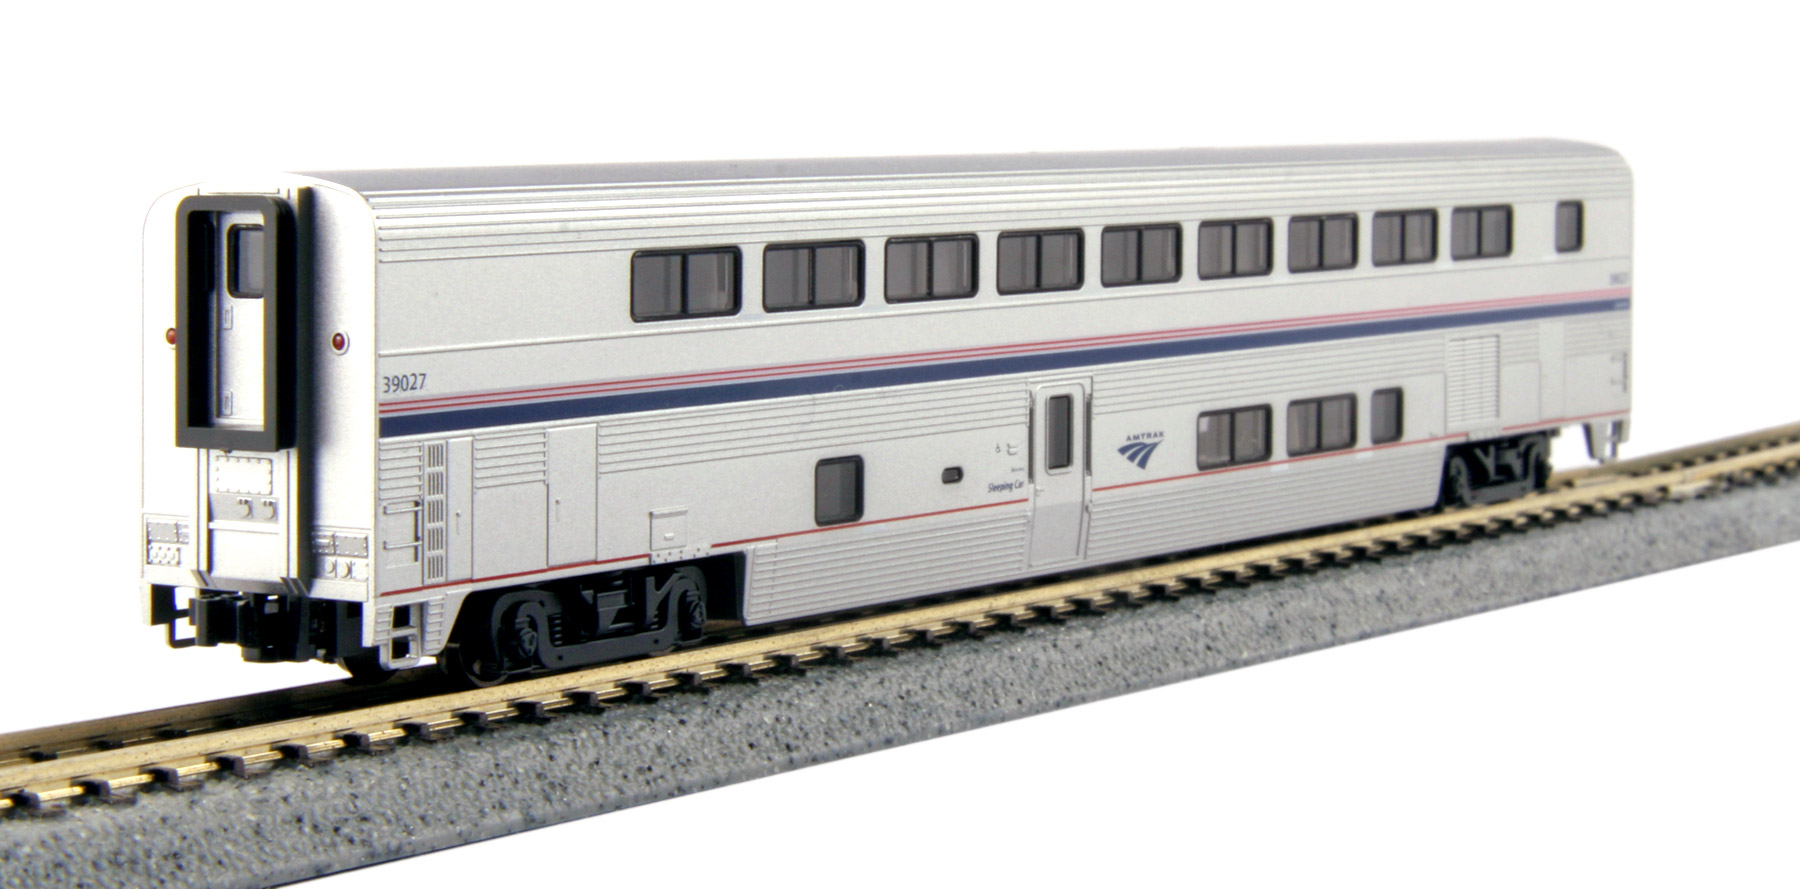 N Scale - Kato USA - 156-0954 - Passenger Car, Superliner, Sleeper - Amtrak - 39027